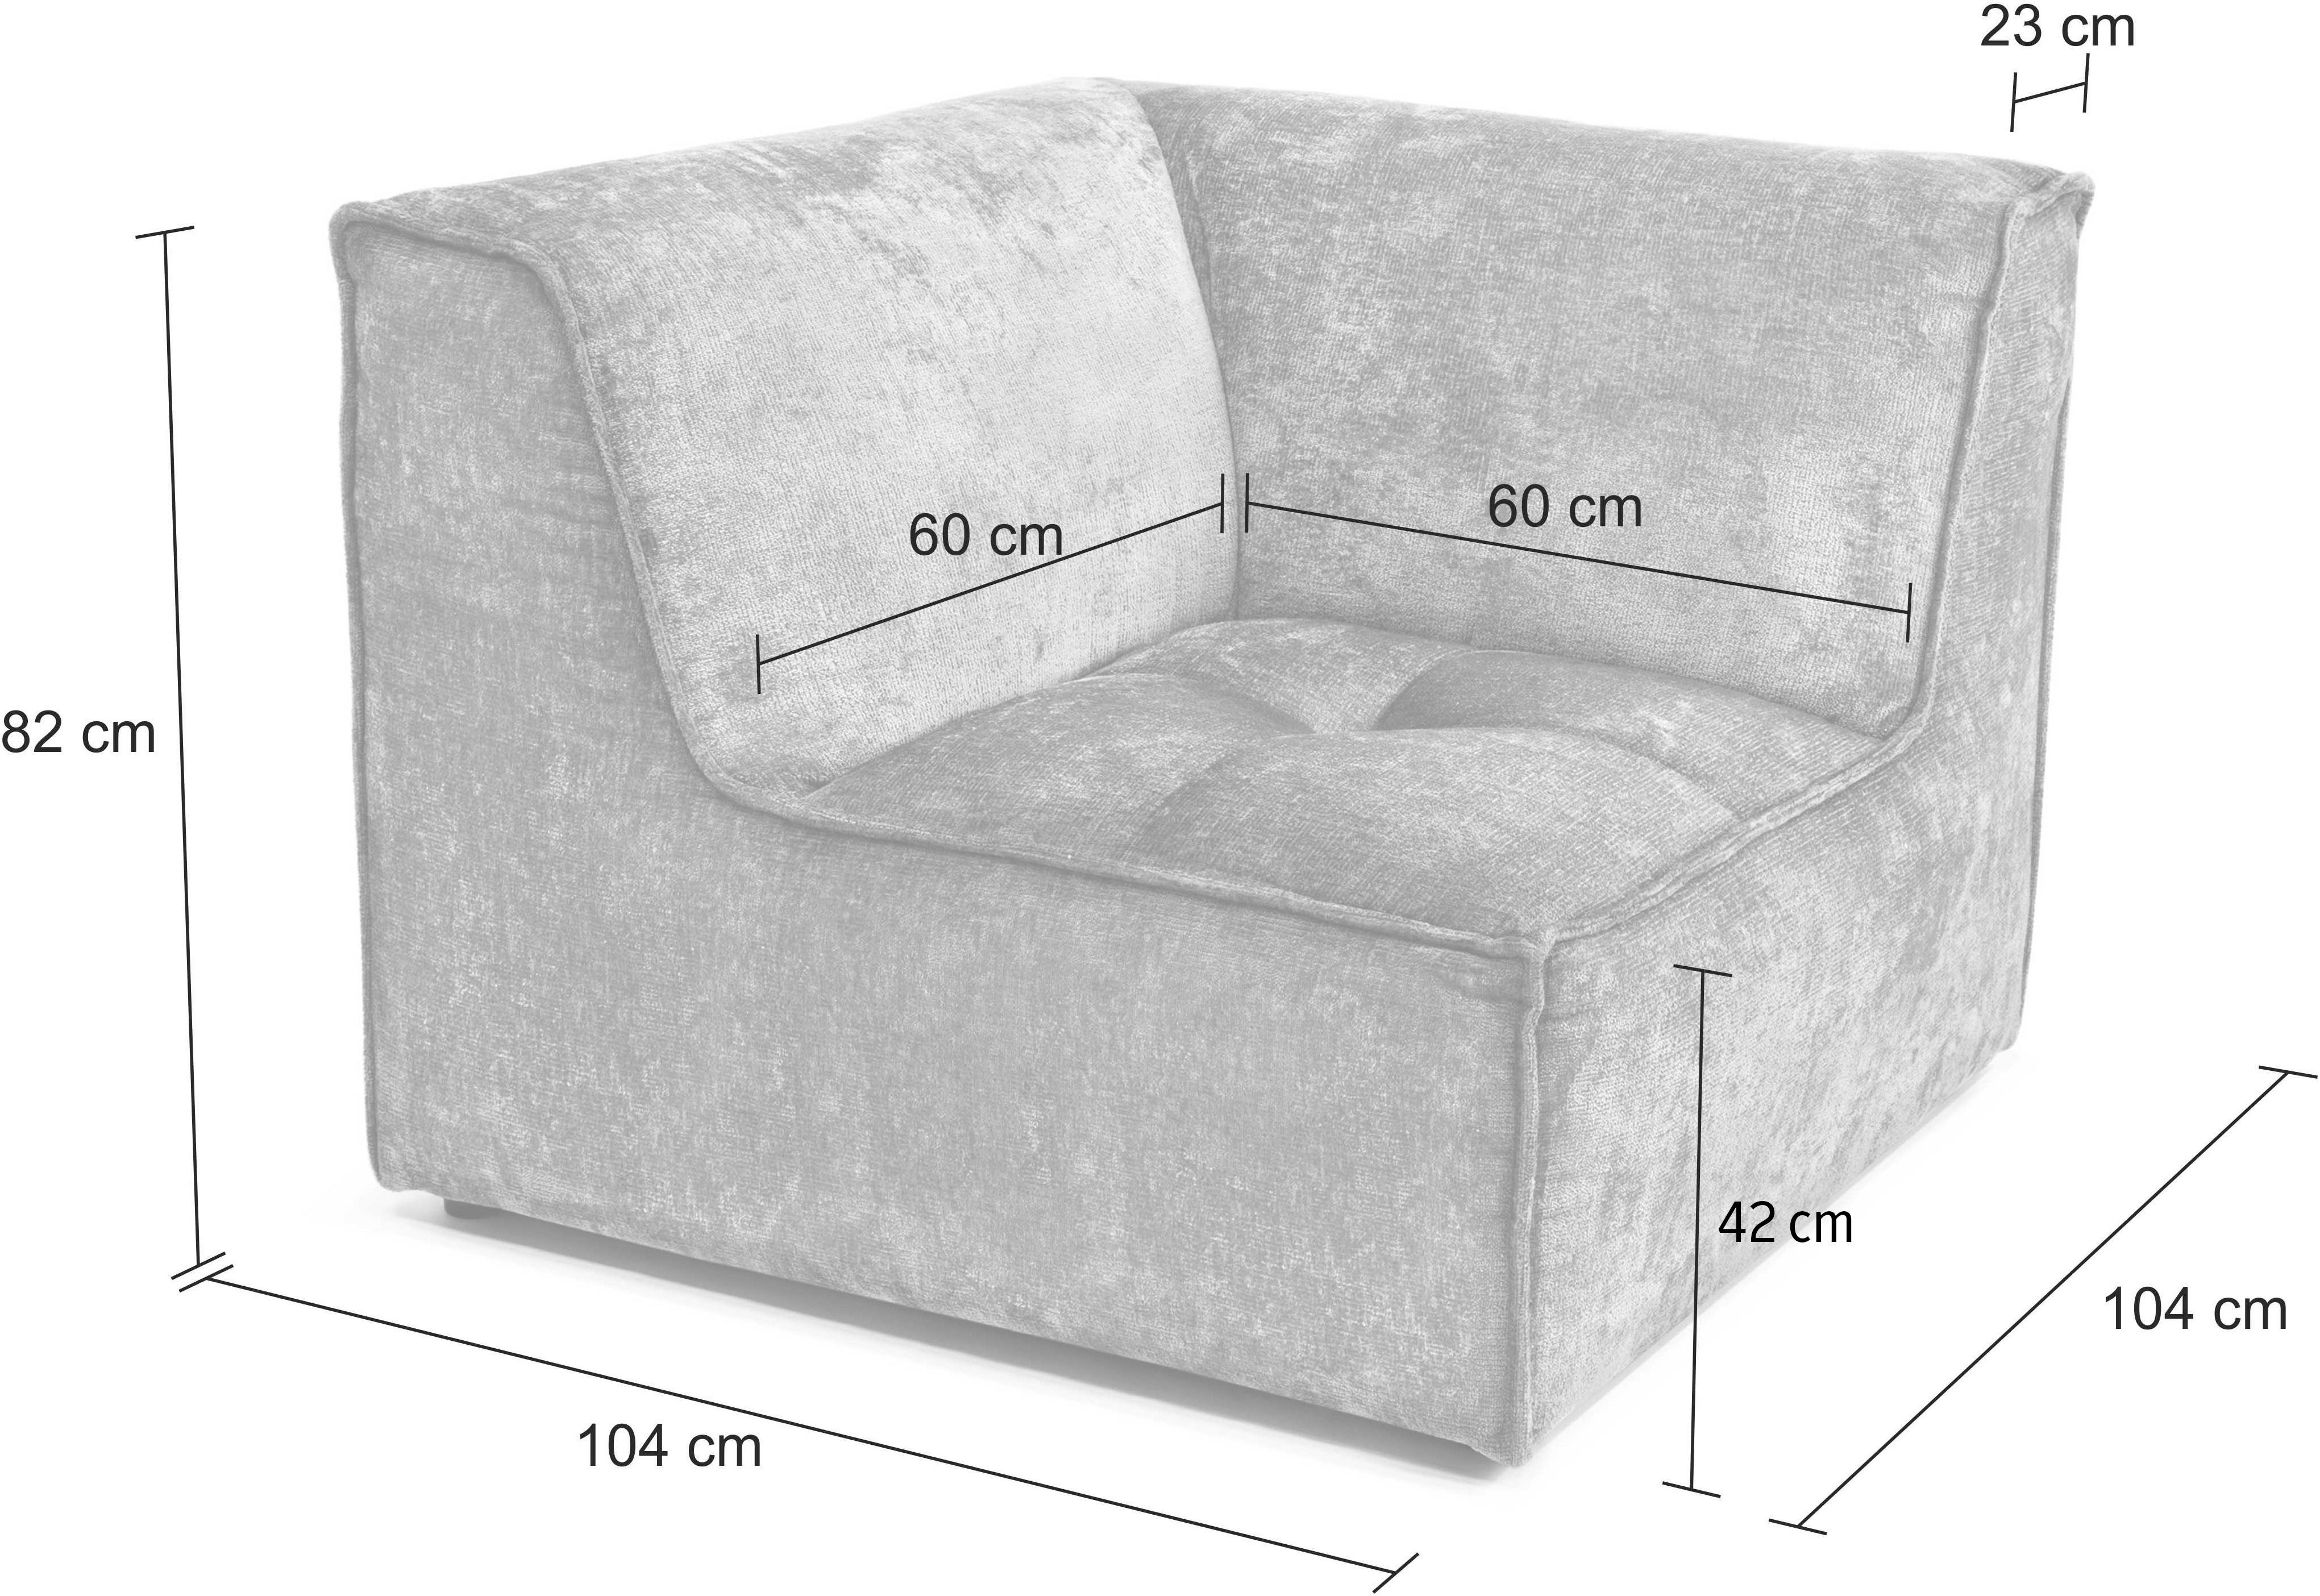 individuelle separat Monolid oder (1 Modul für Sofa-Eckelement RAUM.ID olivgrün Zusammenstellung St), verwendbar, als